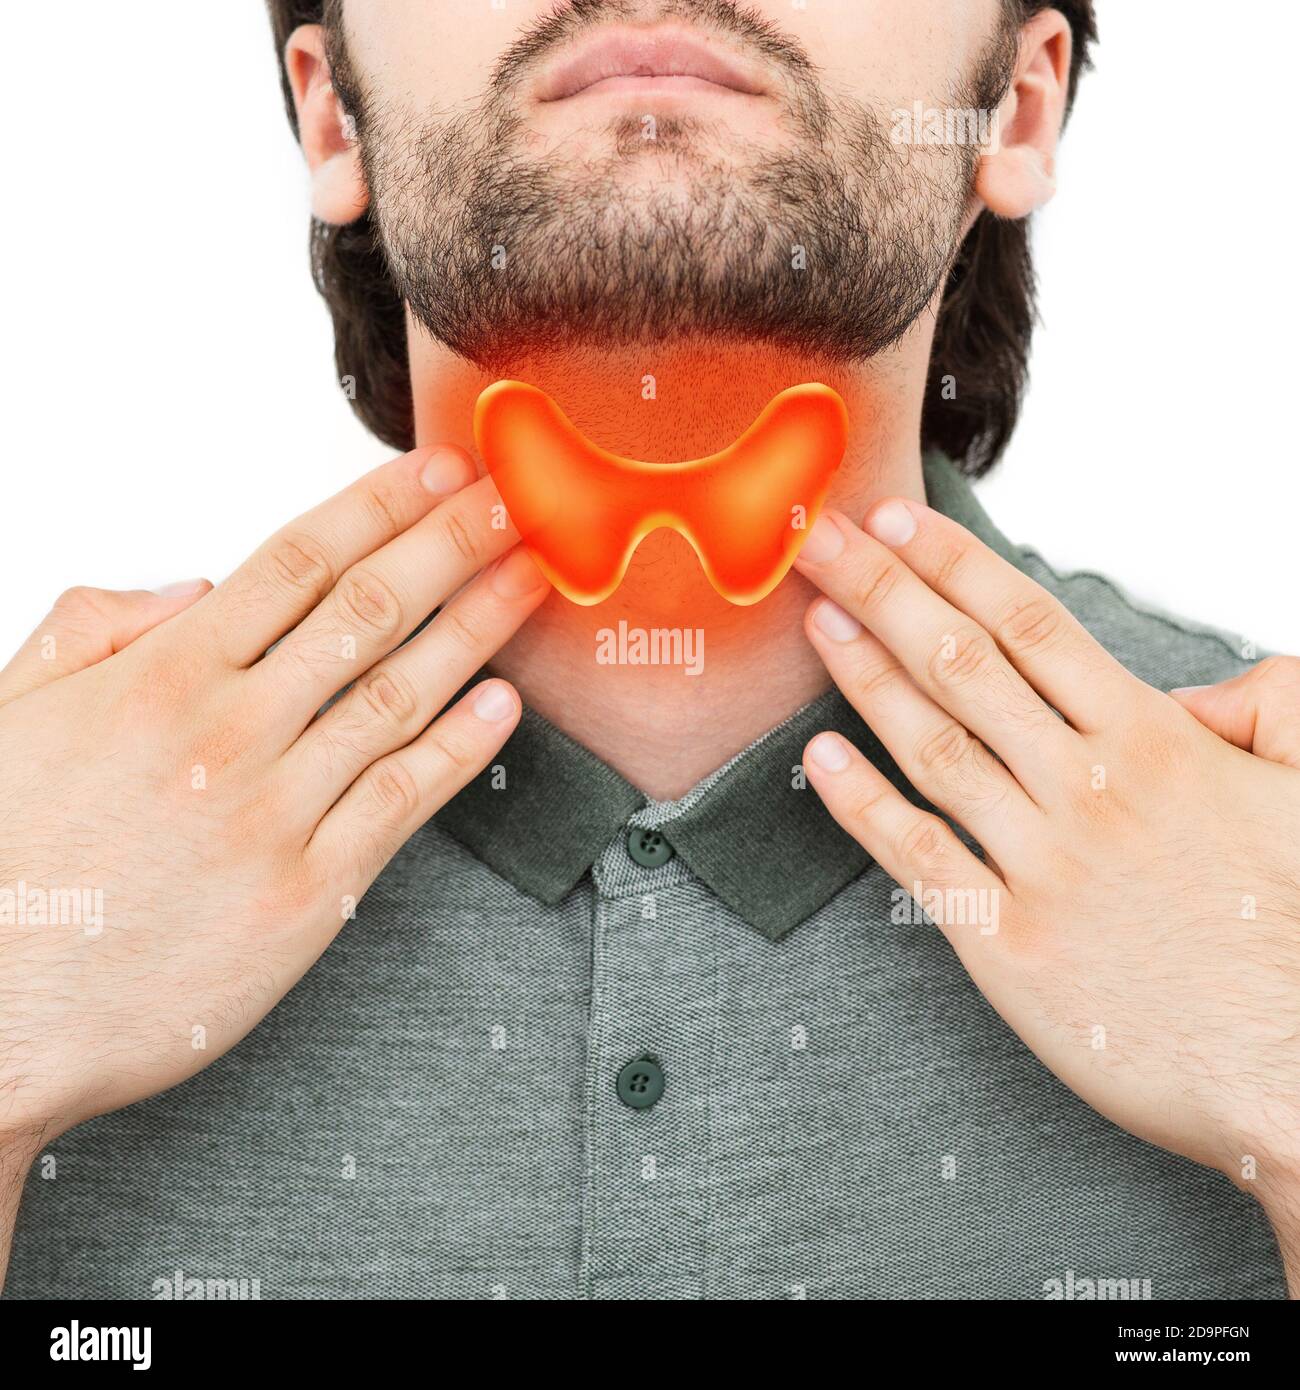 Der Patient tastete seinen Hals, untersuchte die Schilddrüse. Vergrößerte Schilddrüse, isoliert auf weißem Hintergrund. Medizinisches Poster Stockfoto